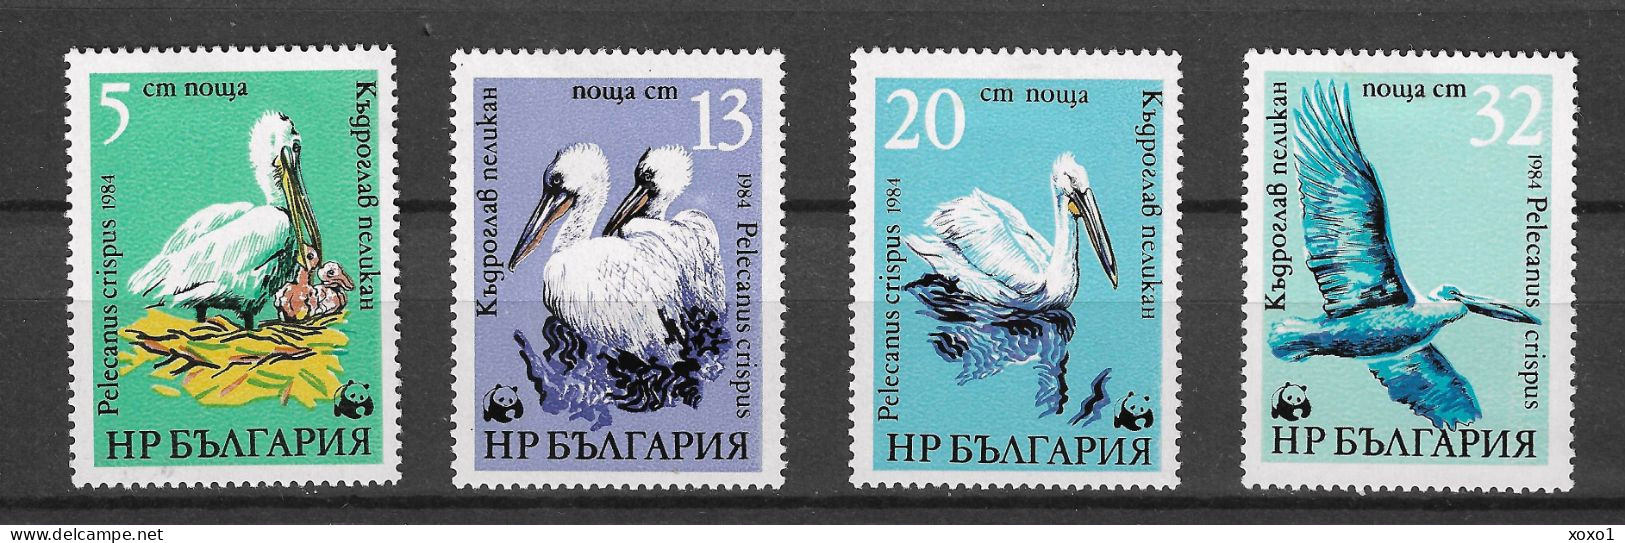 Bulgaria 1984 MiNr. 3303 - 3306 Bulgarien Birds Dalmatian Pelicans WWF 4v MLH * 6.50 € - Pélicans